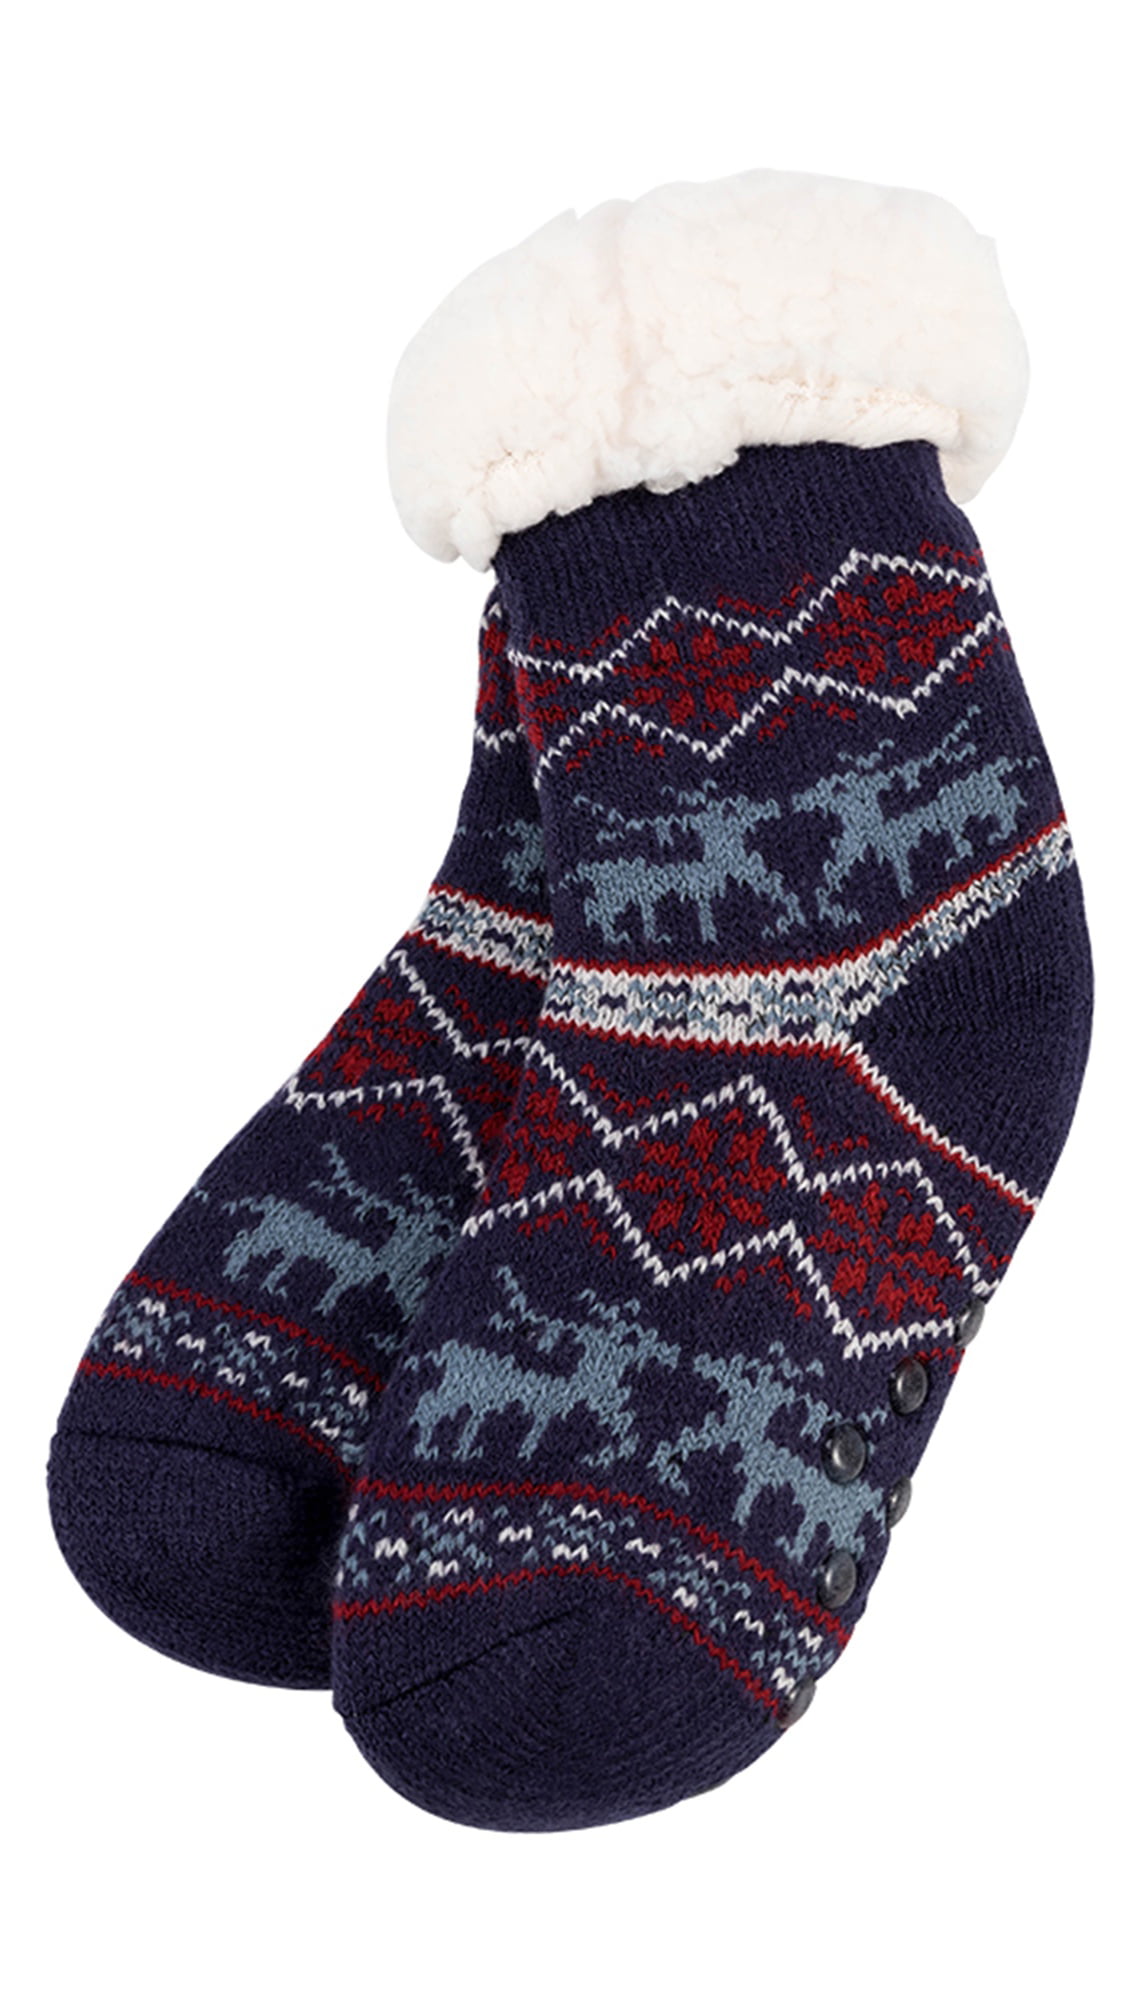 Newstar - Newstar T031BKNV Christmas Slipper Socks for Kids, Kid's ...